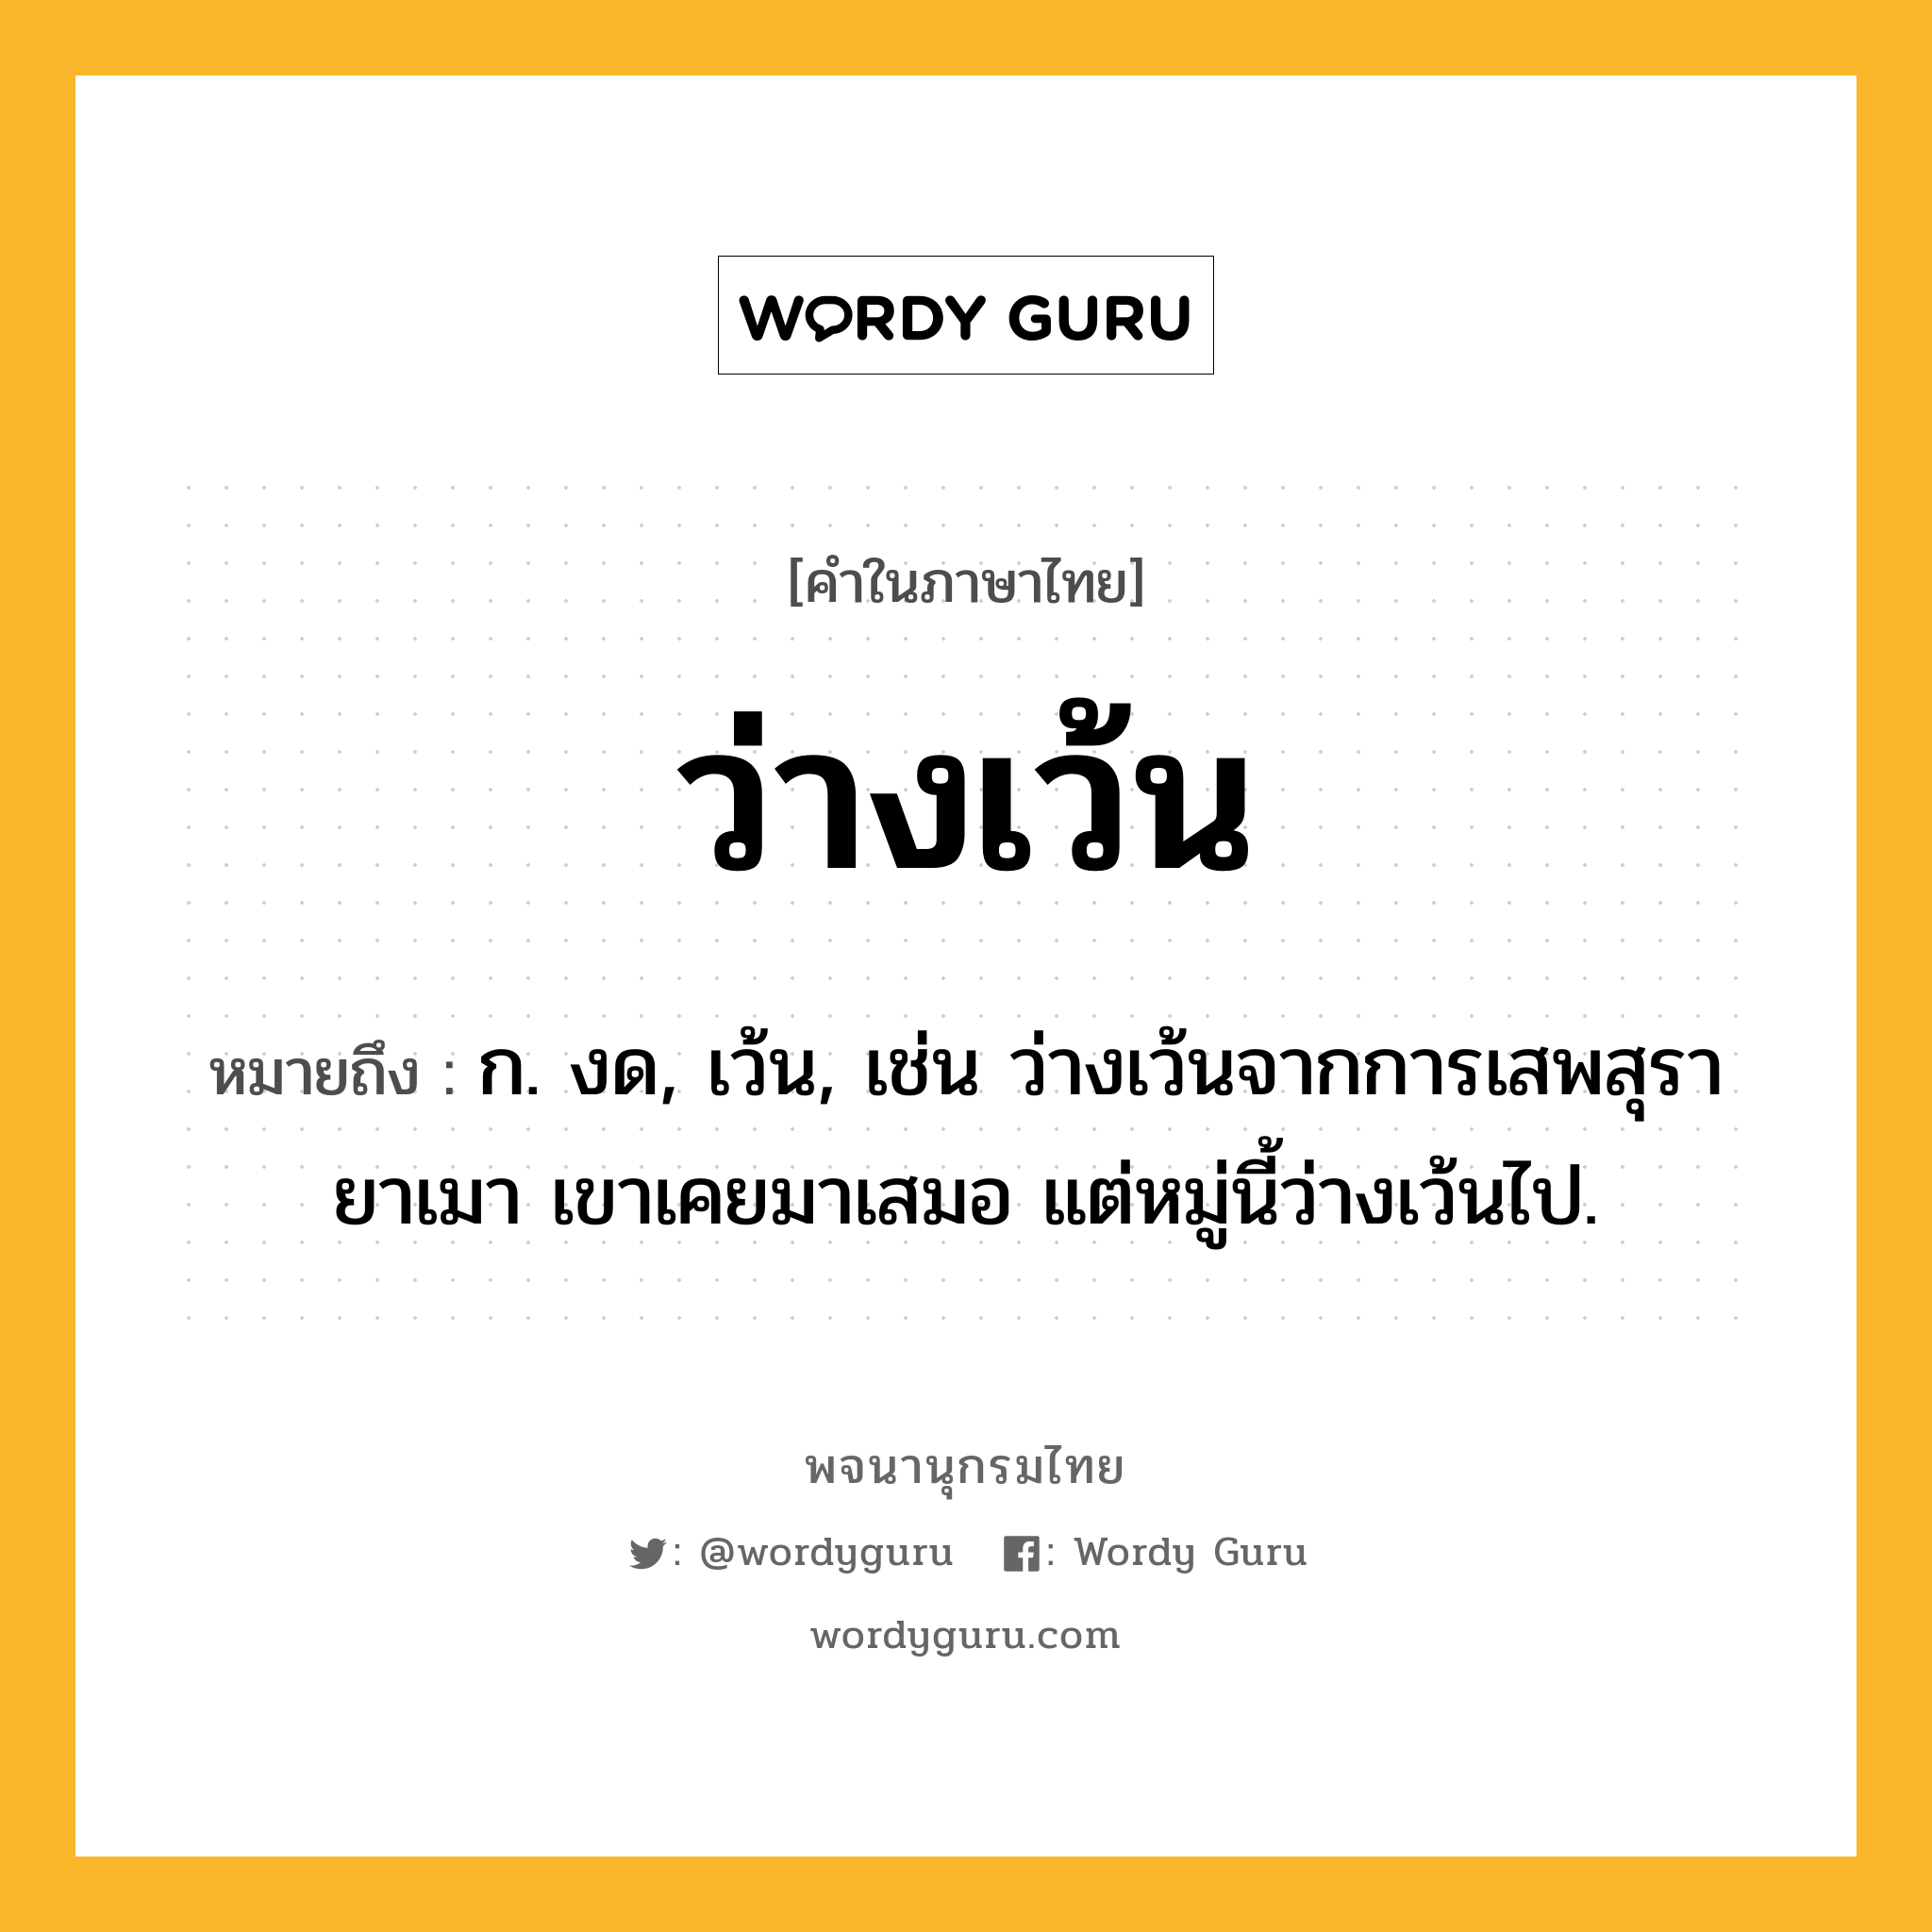 ว่างเว้น ความหมาย หมายถึงอะไร?, คำในภาษาไทย ว่างเว้น หมายถึง ก. งด, เว้น, เช่น ว่างเว้นจากการเสพสุรายาเมา เขาเคยมาเสมอ แต่หมู่นี้ว่างเว้นไป.